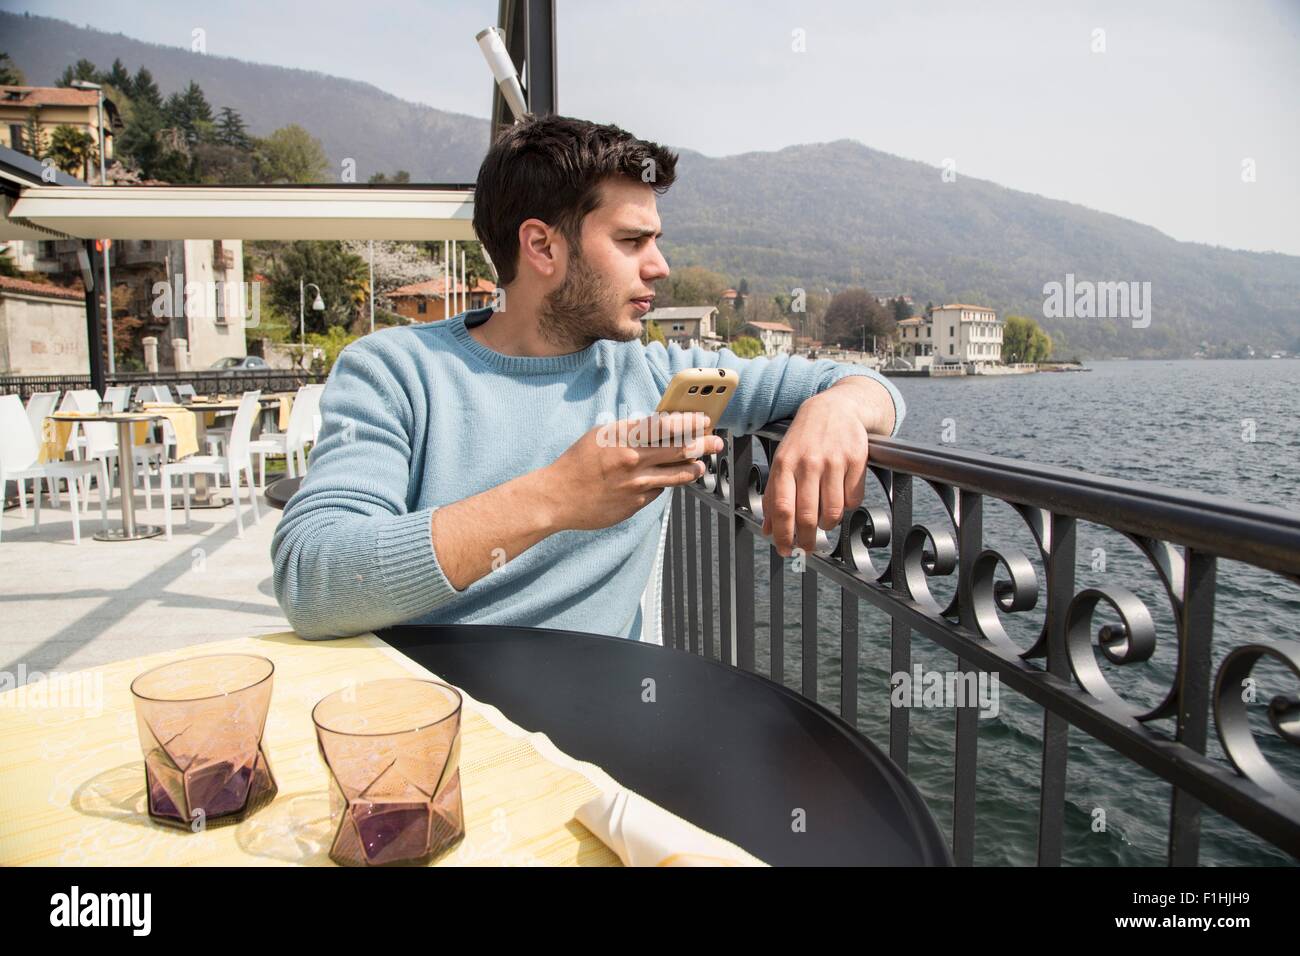 Giovane uomo guardando fuori dal ristorante sul lago, il Lago di Mergozzo, Provincia di Verbania, Piemonte, Italia Foto Stock